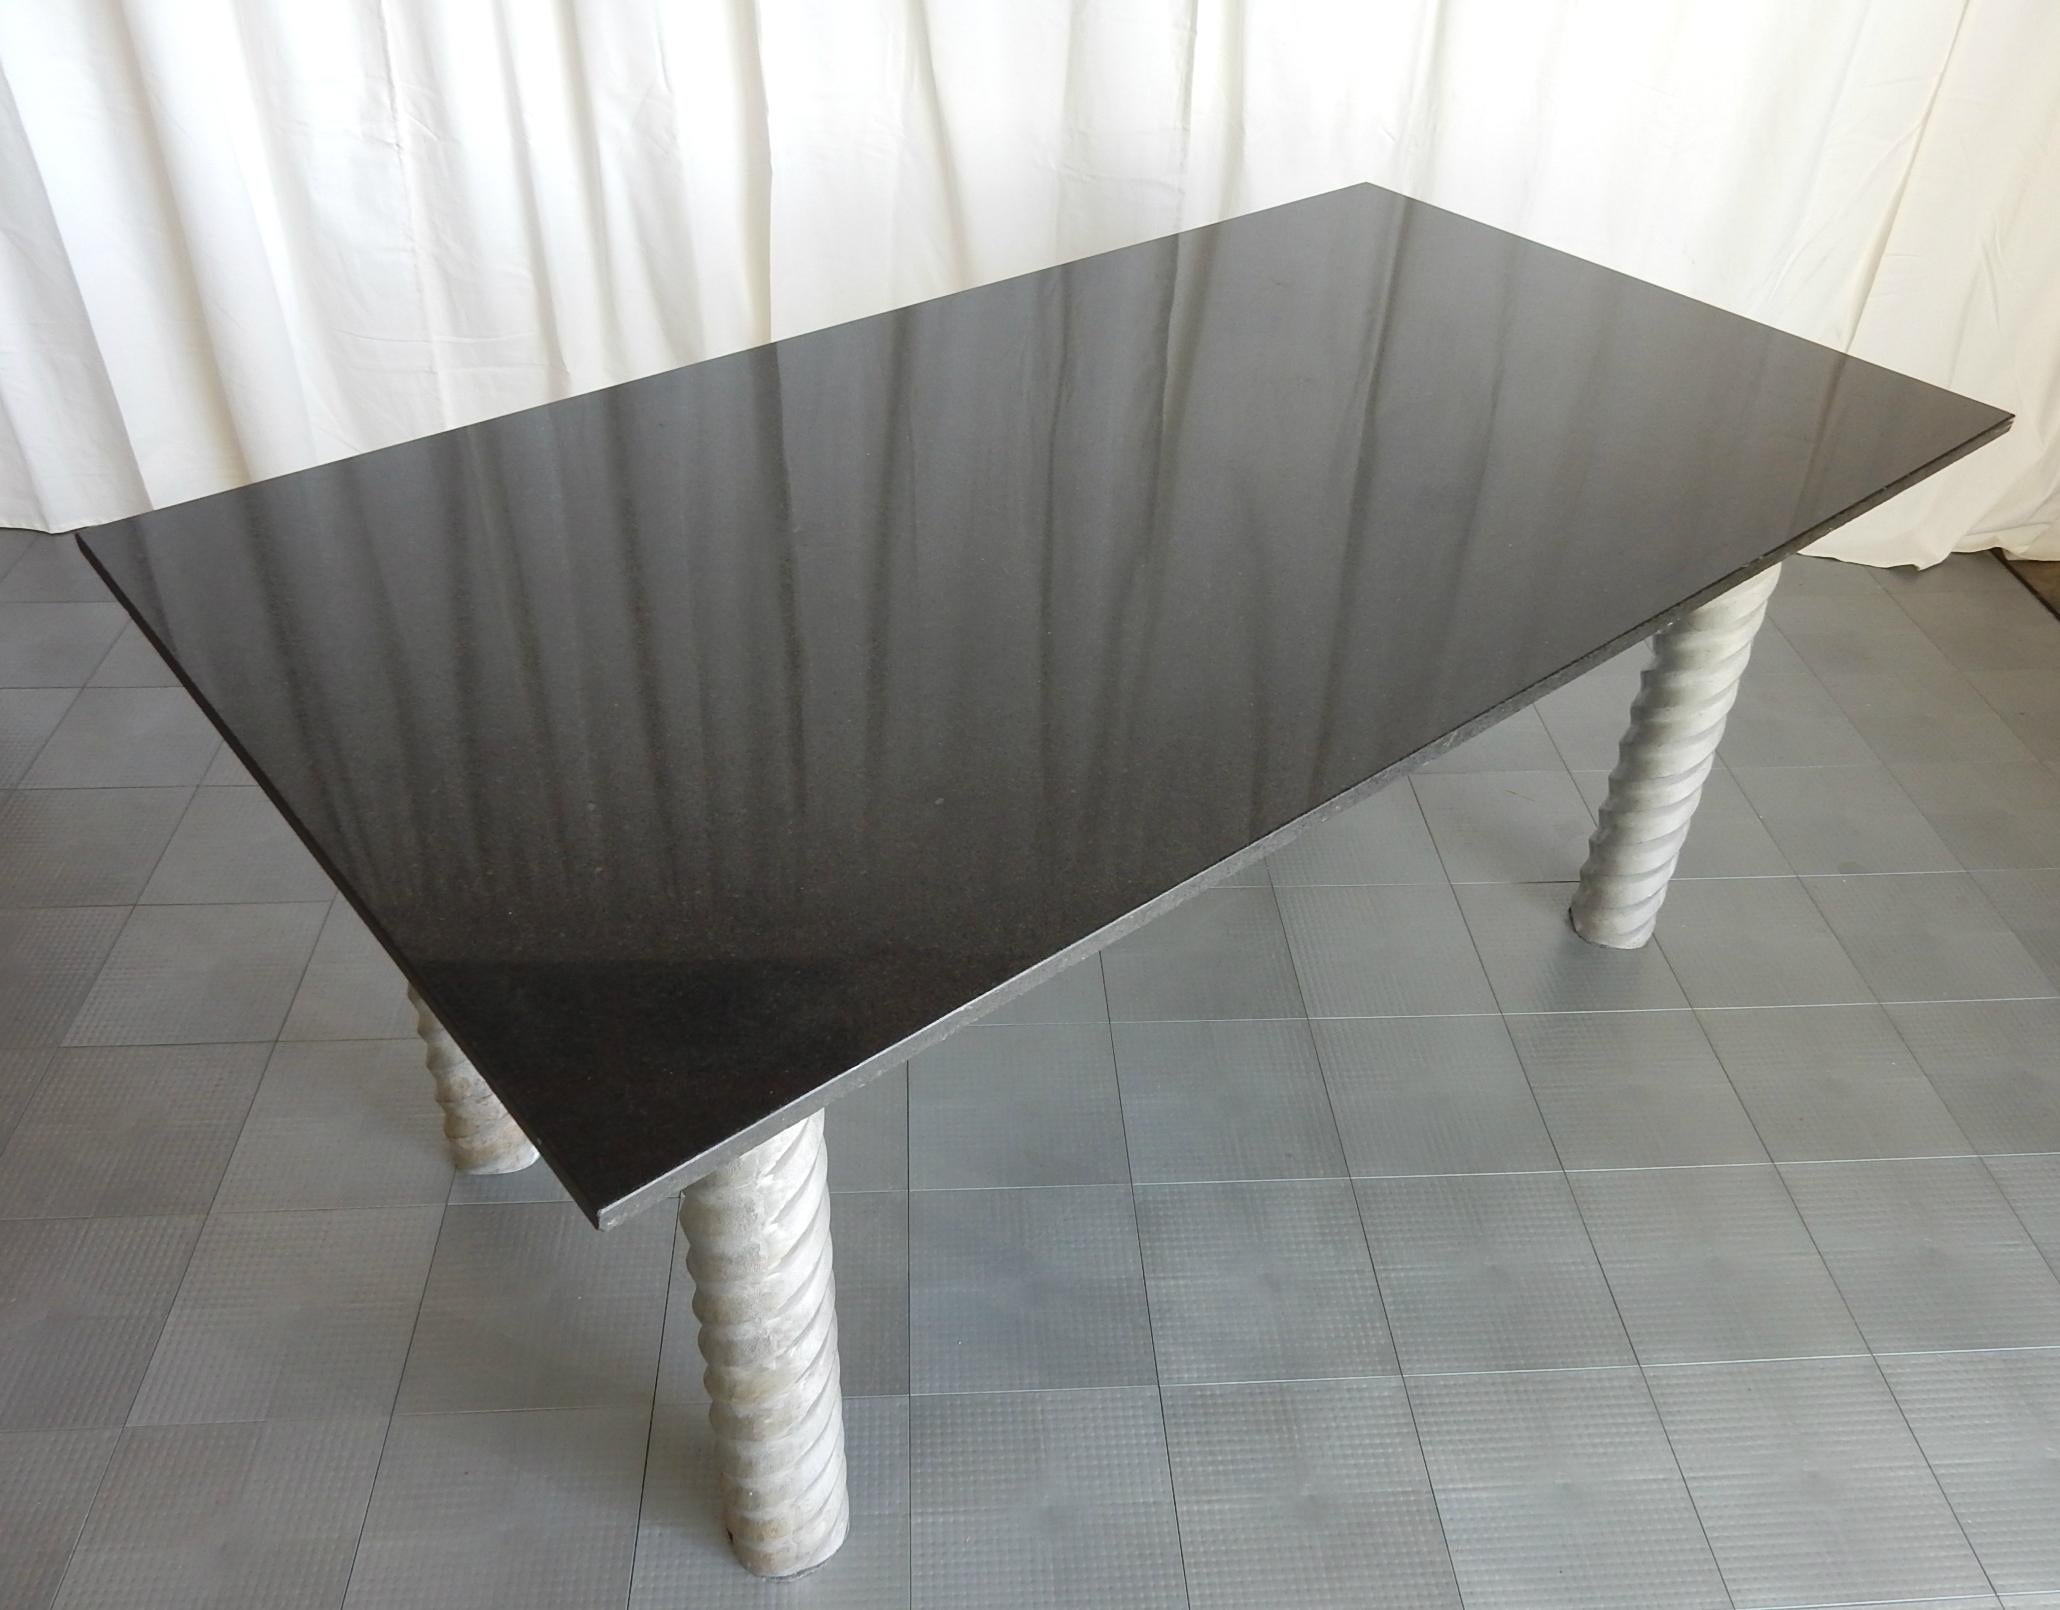 granite table legs